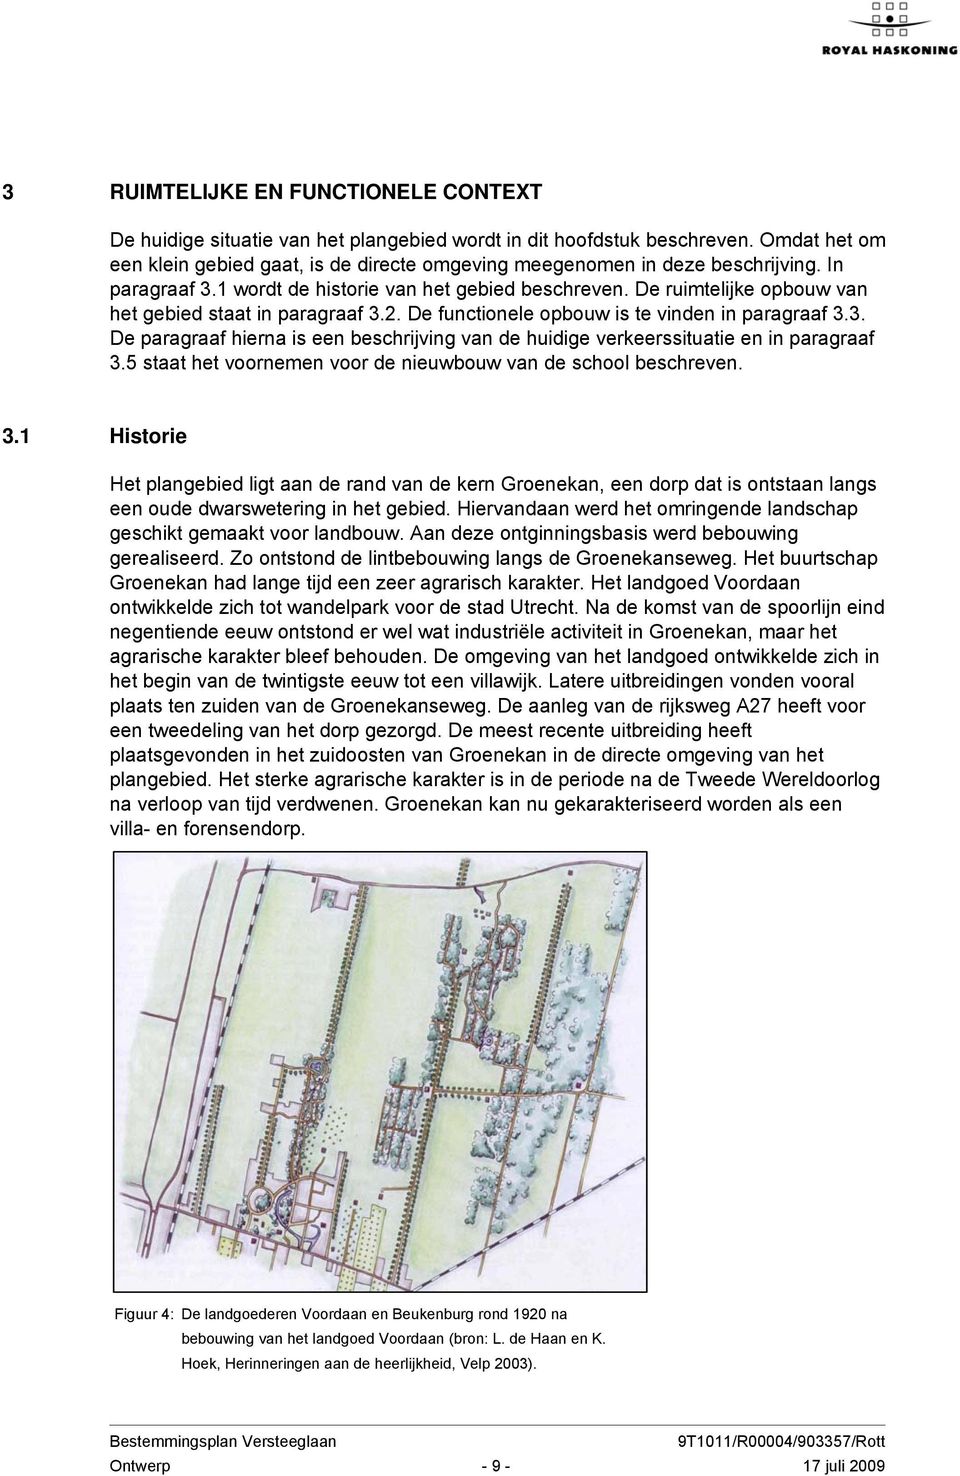 De ruimtelijke opbouw van het gebied staat in paragraaf 3.2. De functionele opbouw is te vinden in paragraaf 3.3. De paragraaf hierna is een beschrijving van de huidige verkeerssituatie en in paragraaf 3.